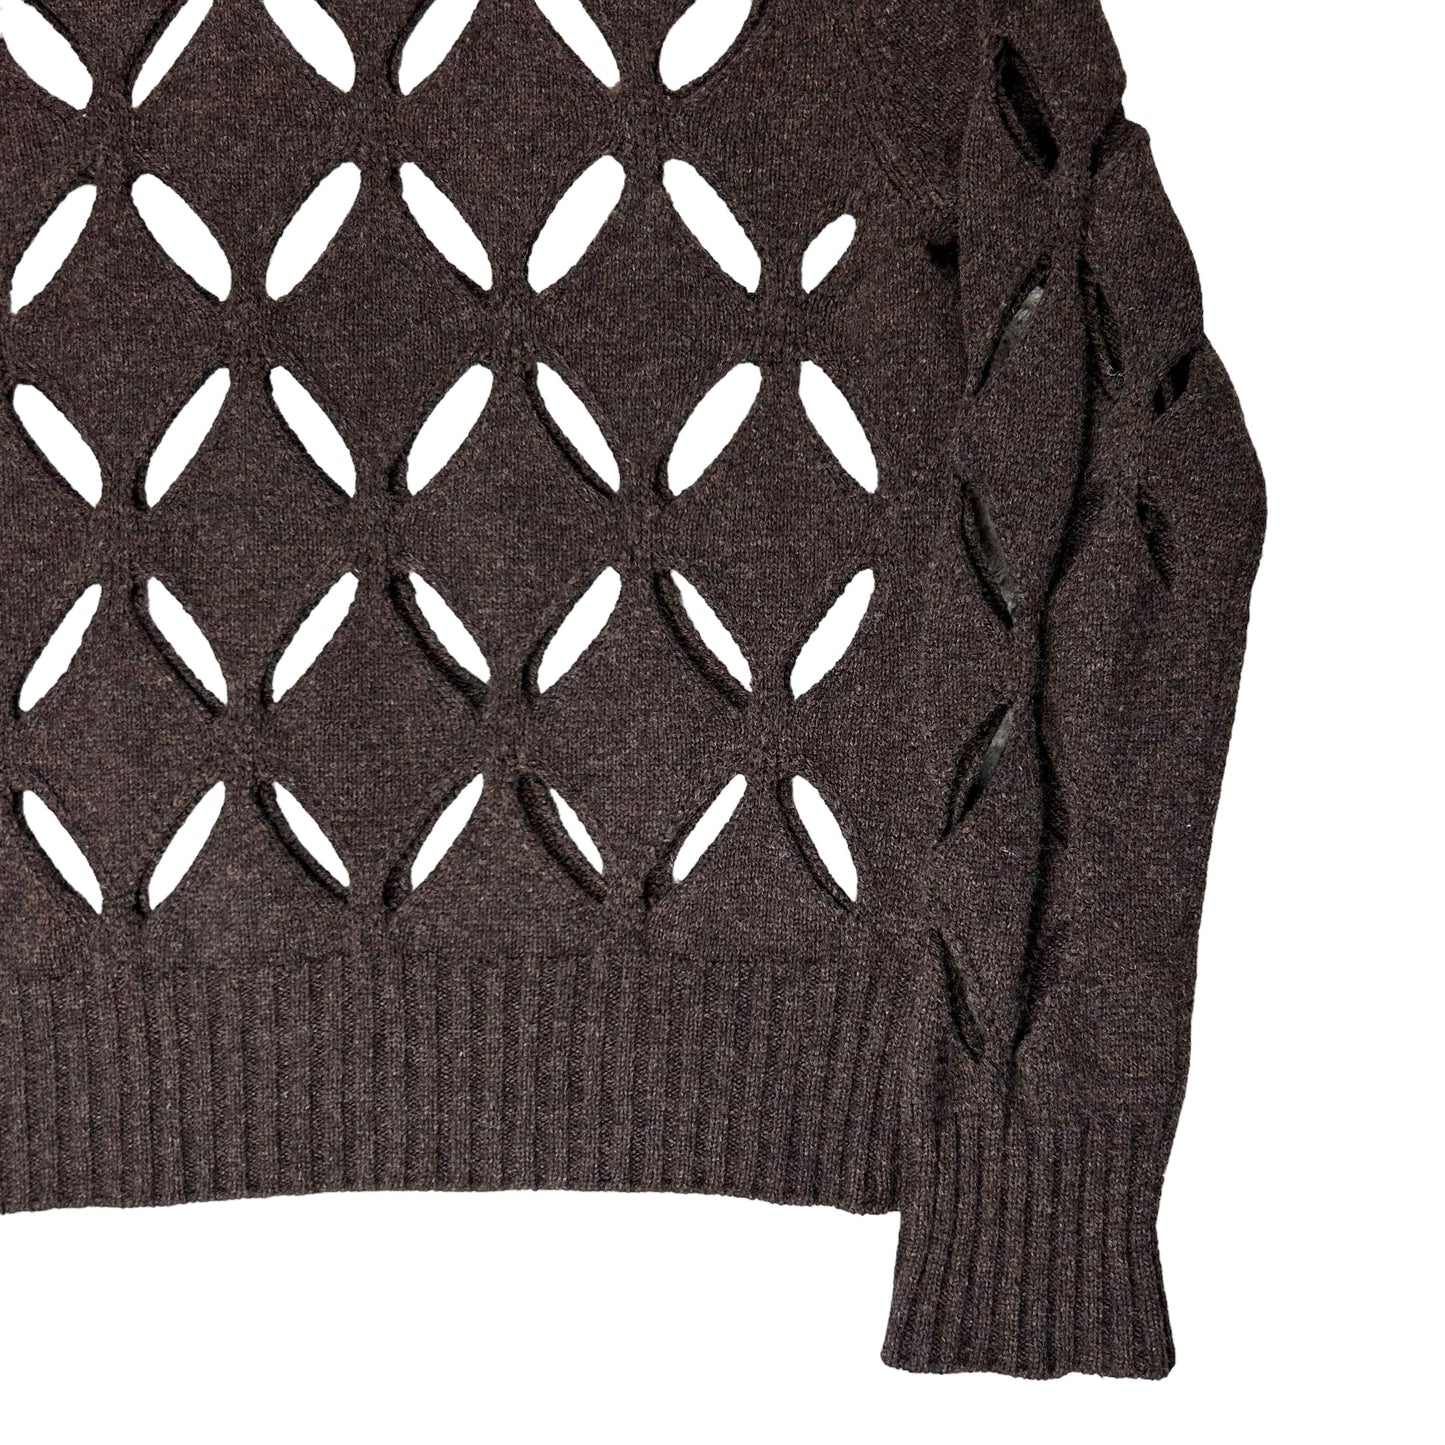 Stefan Cooke Diamond Slashed Knit Sweater - AW20